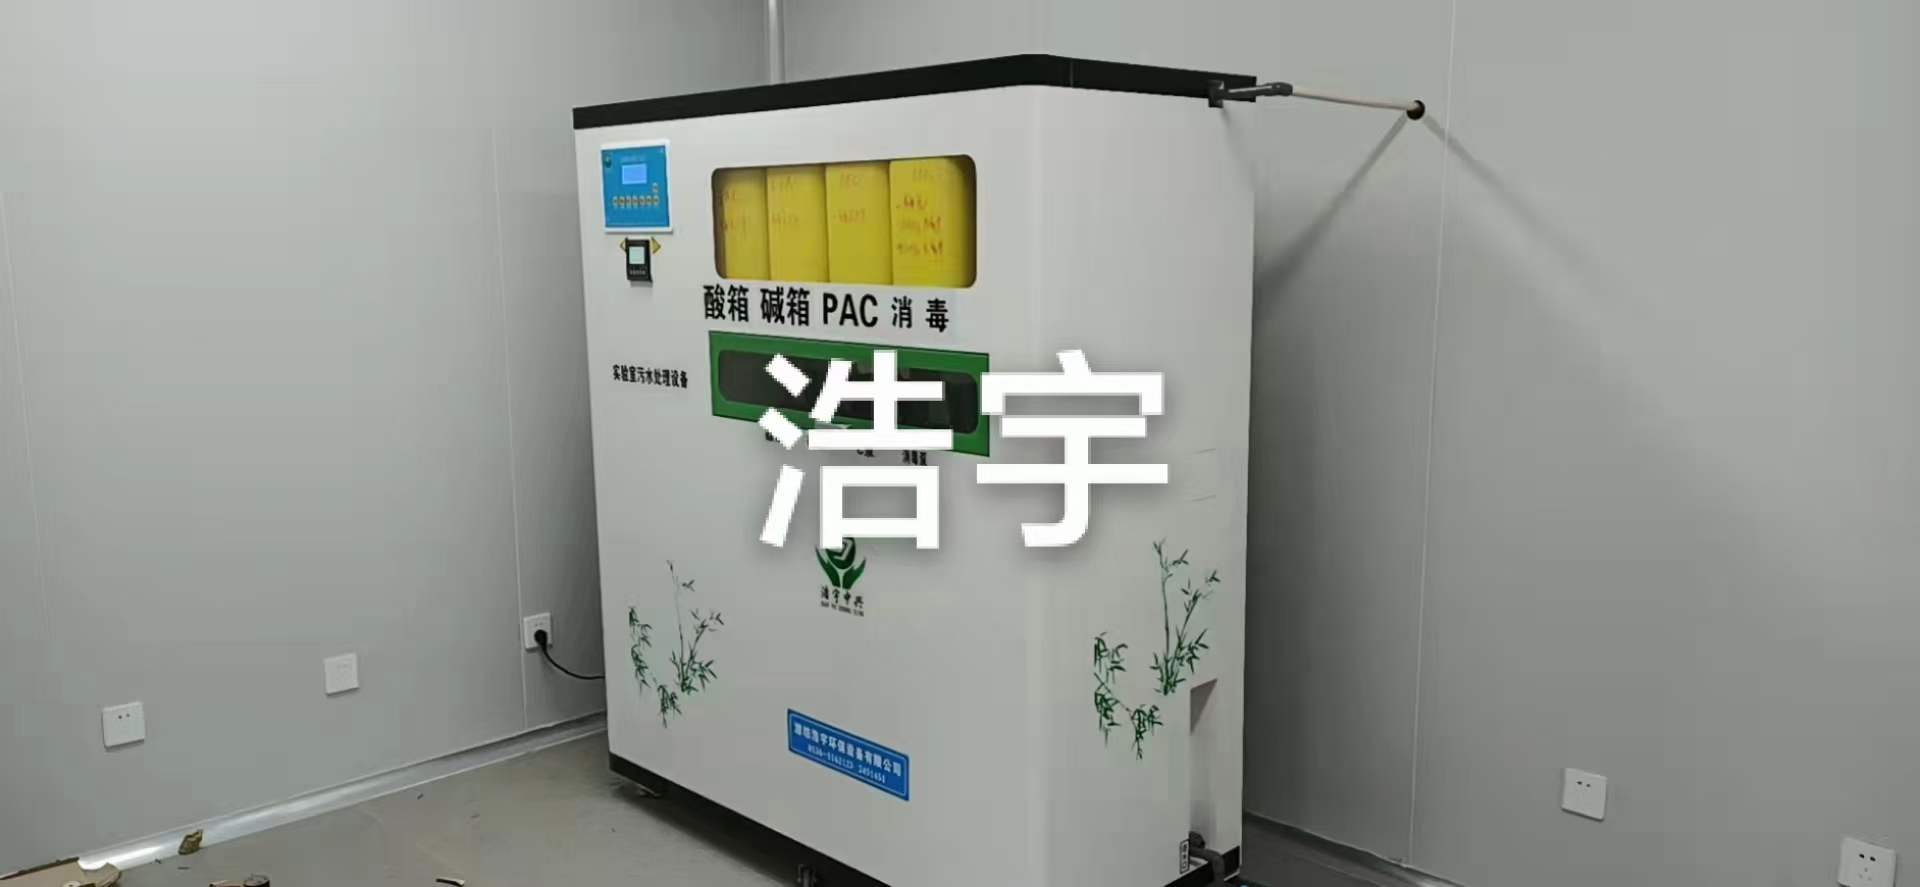 pg电子平台北京化验室污水处理设备厂家(图1)